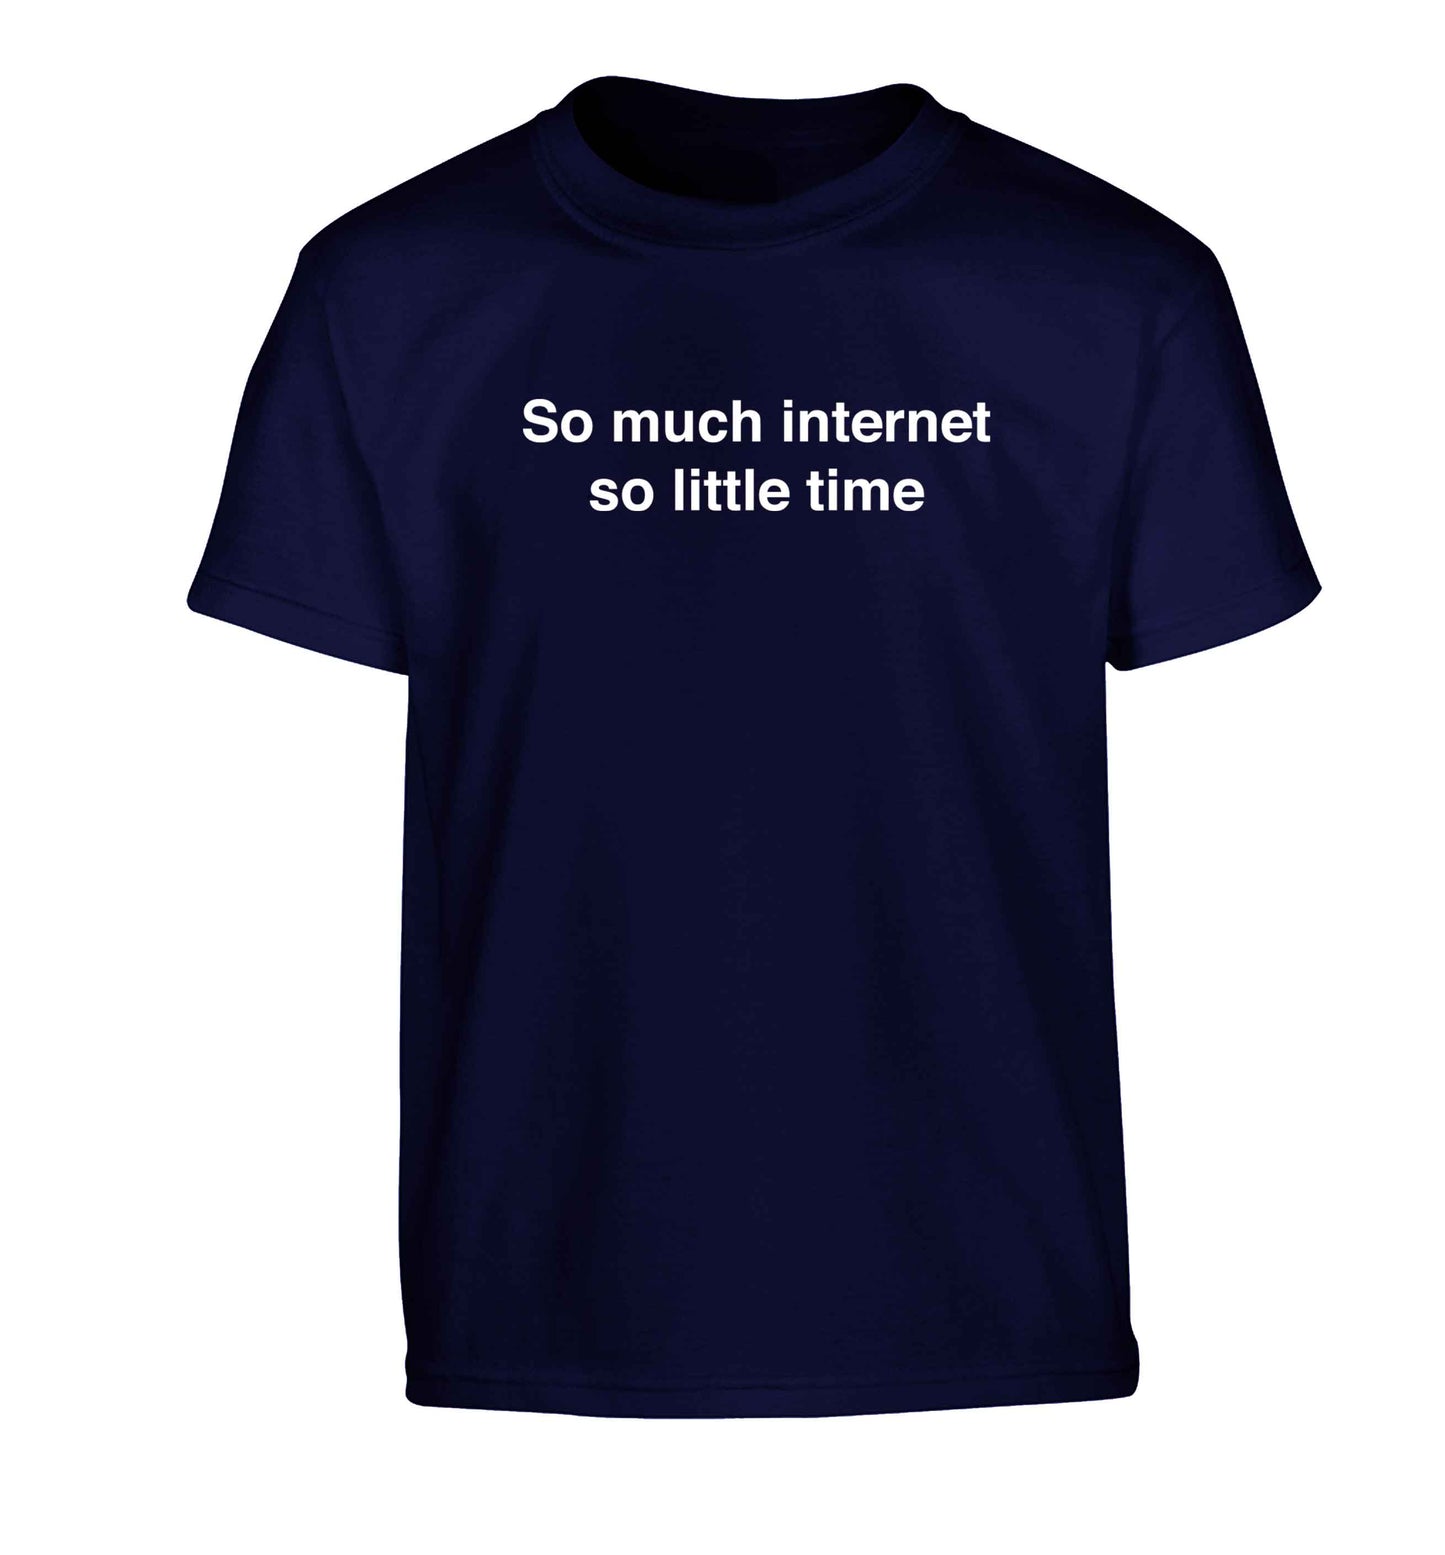 So much internet so little time Children's navy Tshirt 12-13 Years